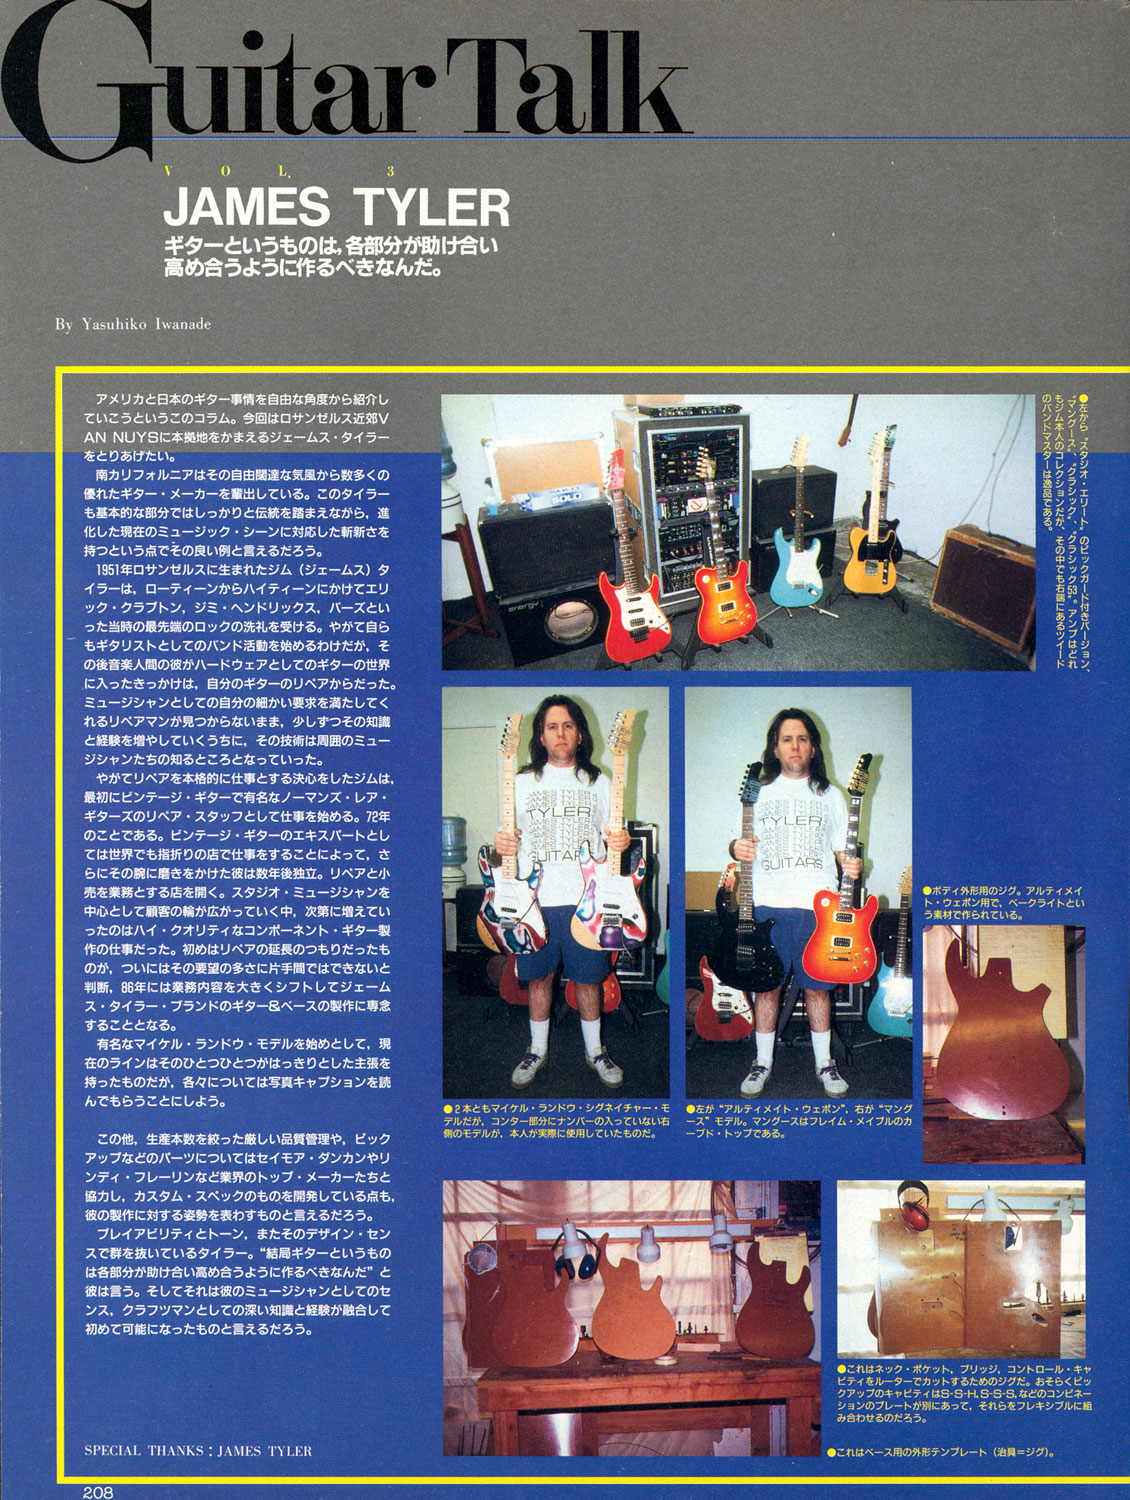 Copy of 1995 Guitar Magazine